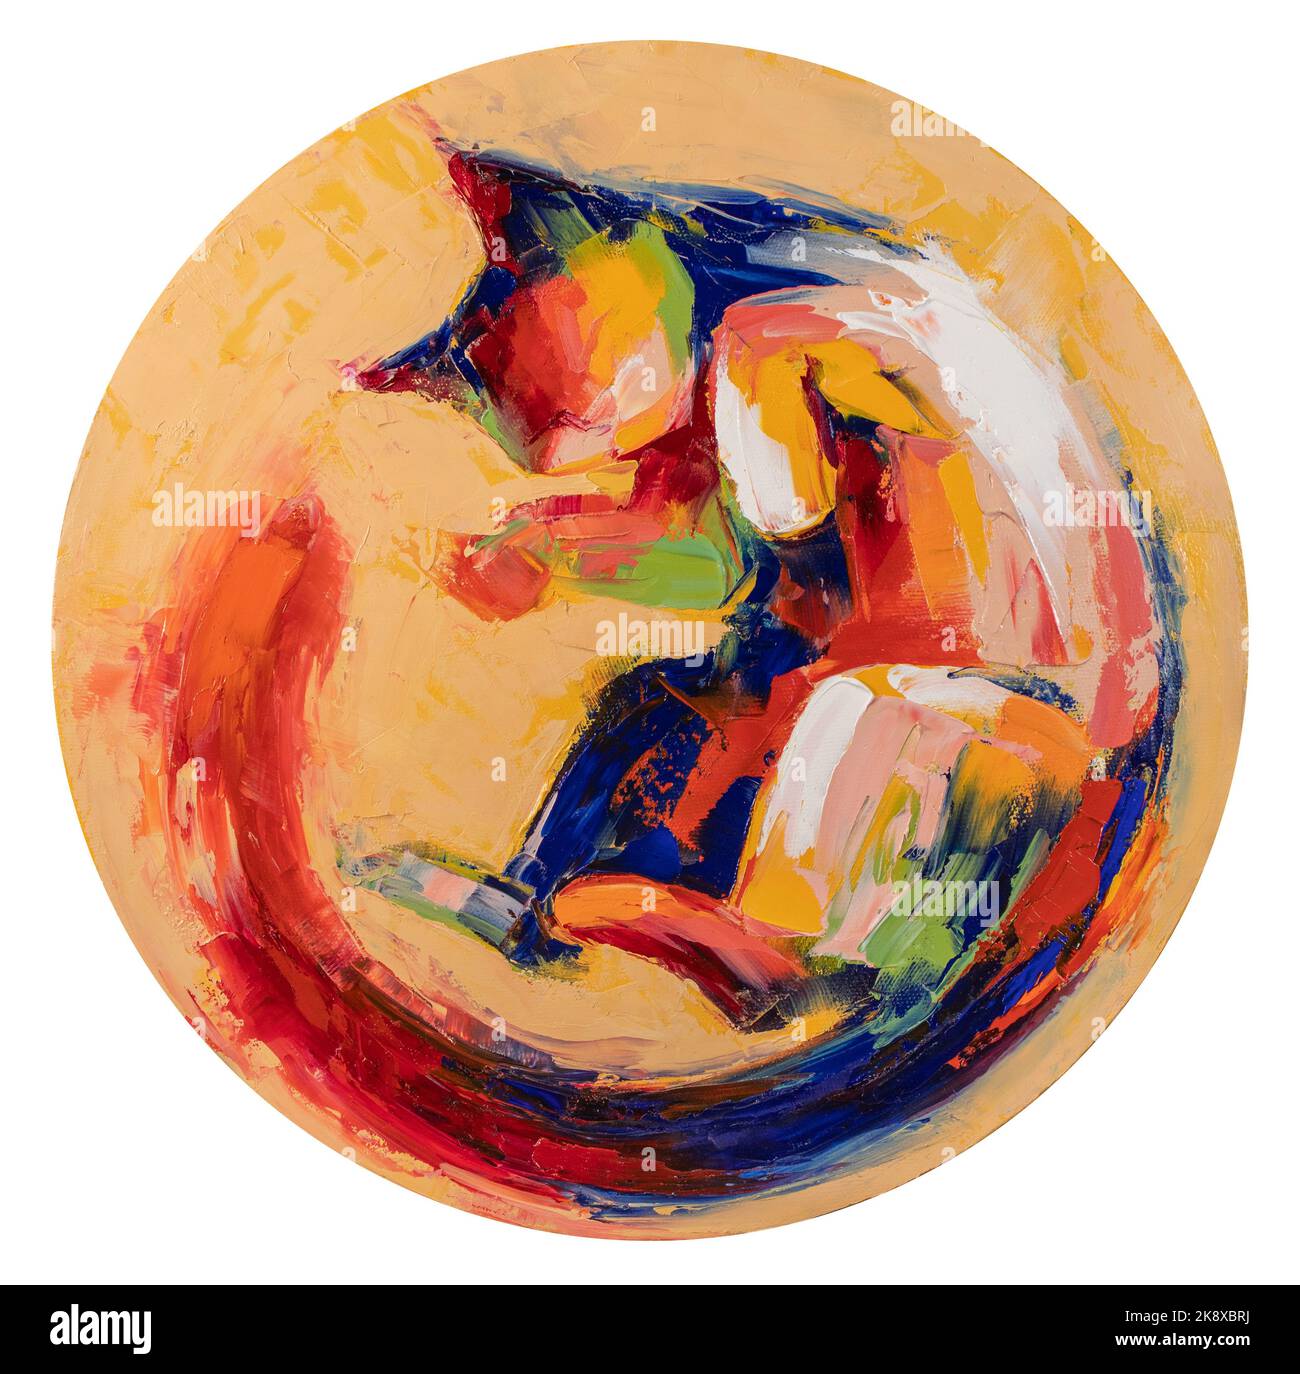 Ölbild einer Katze zusammengerollte Malerei in bunten Tönen. Konzeptuelle abstrakte Malerei. Closeup Malerei Öl und Palettenmesser auf Leinwand. Stockfoto